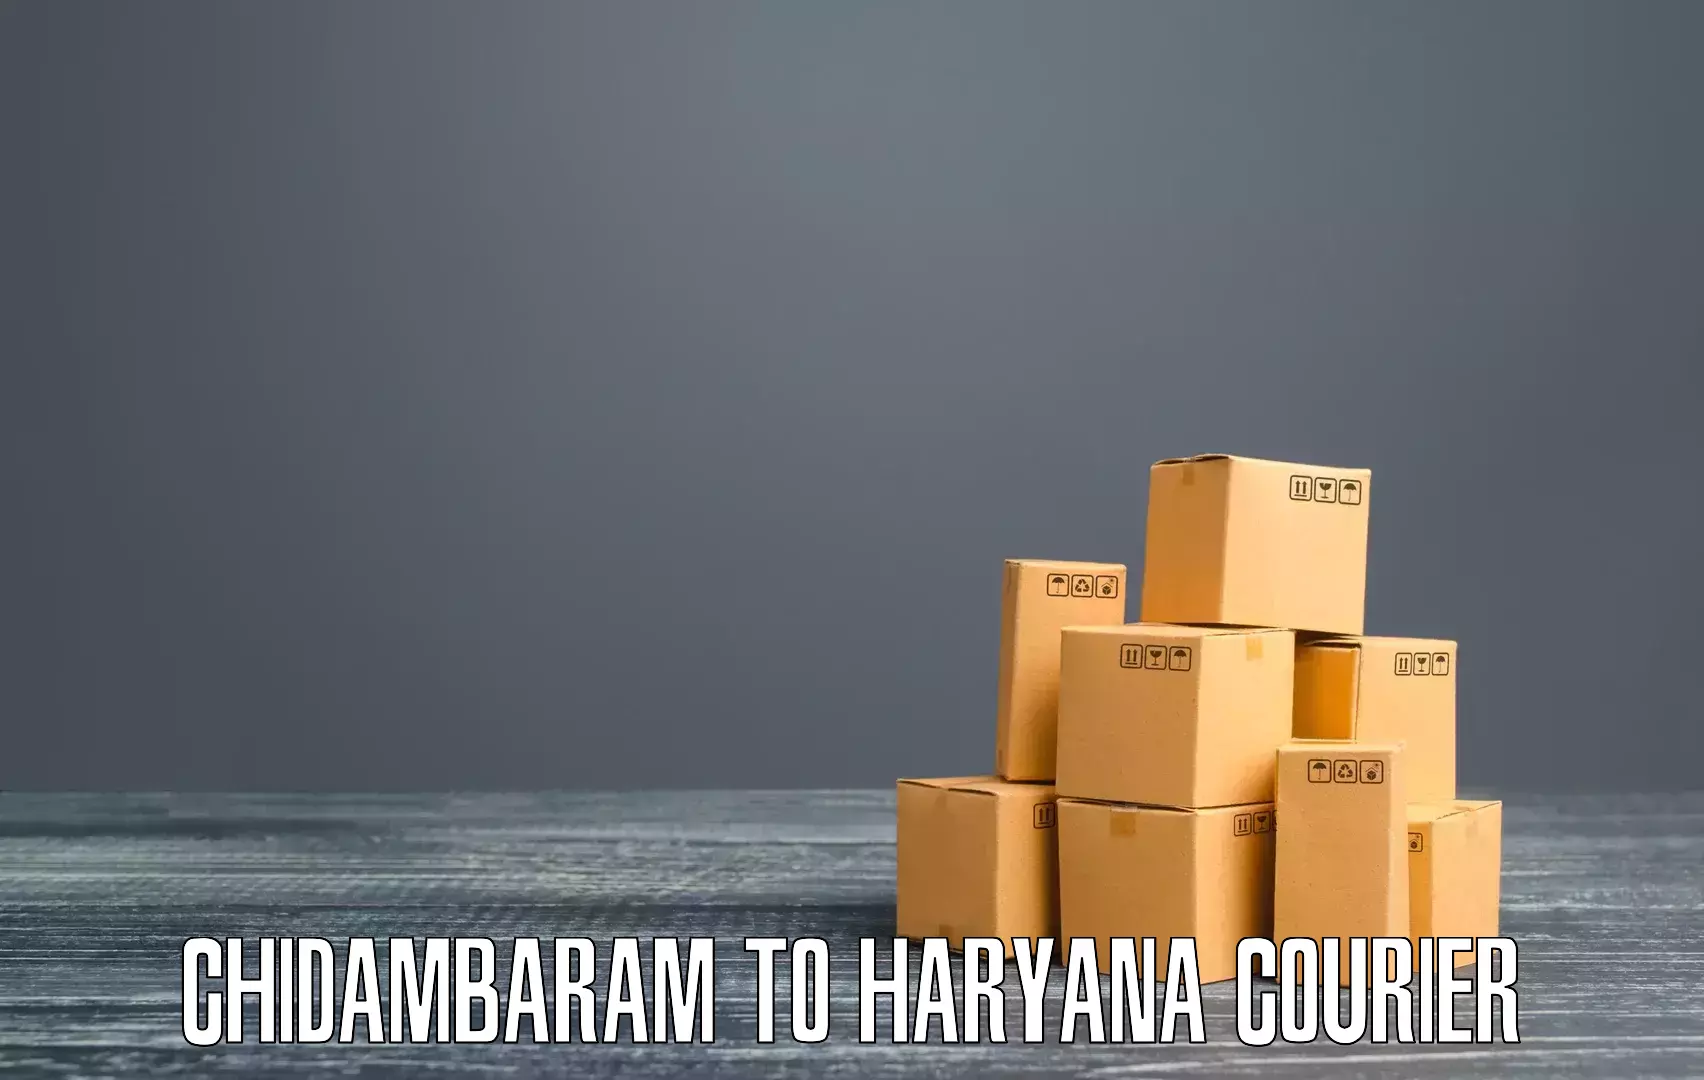 Advanced delivery network Chidambaram to Chirya